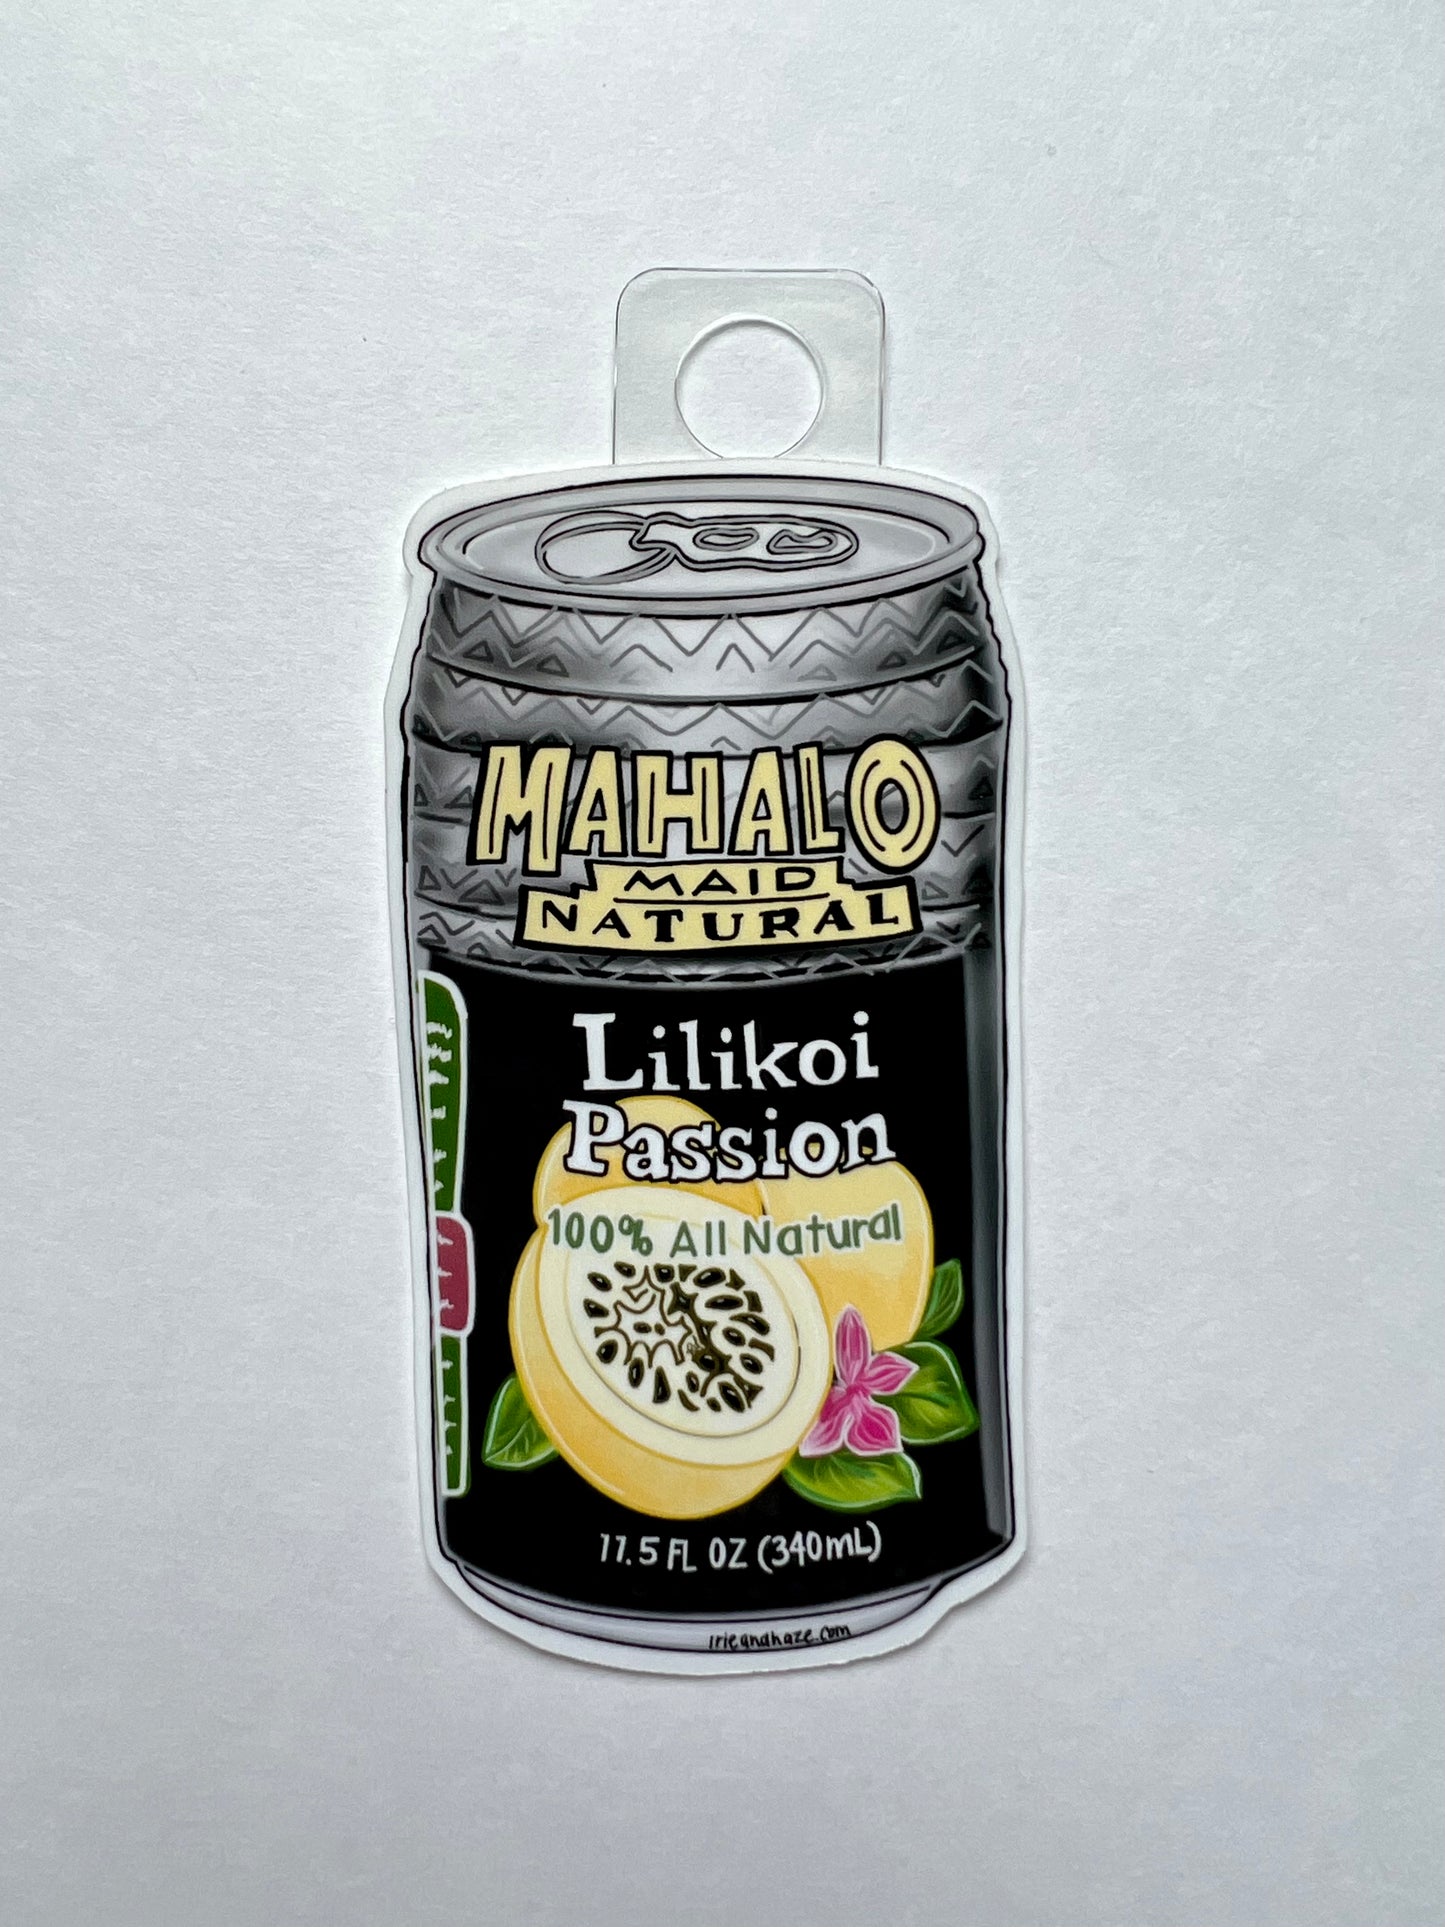 Mahalo maid sticker